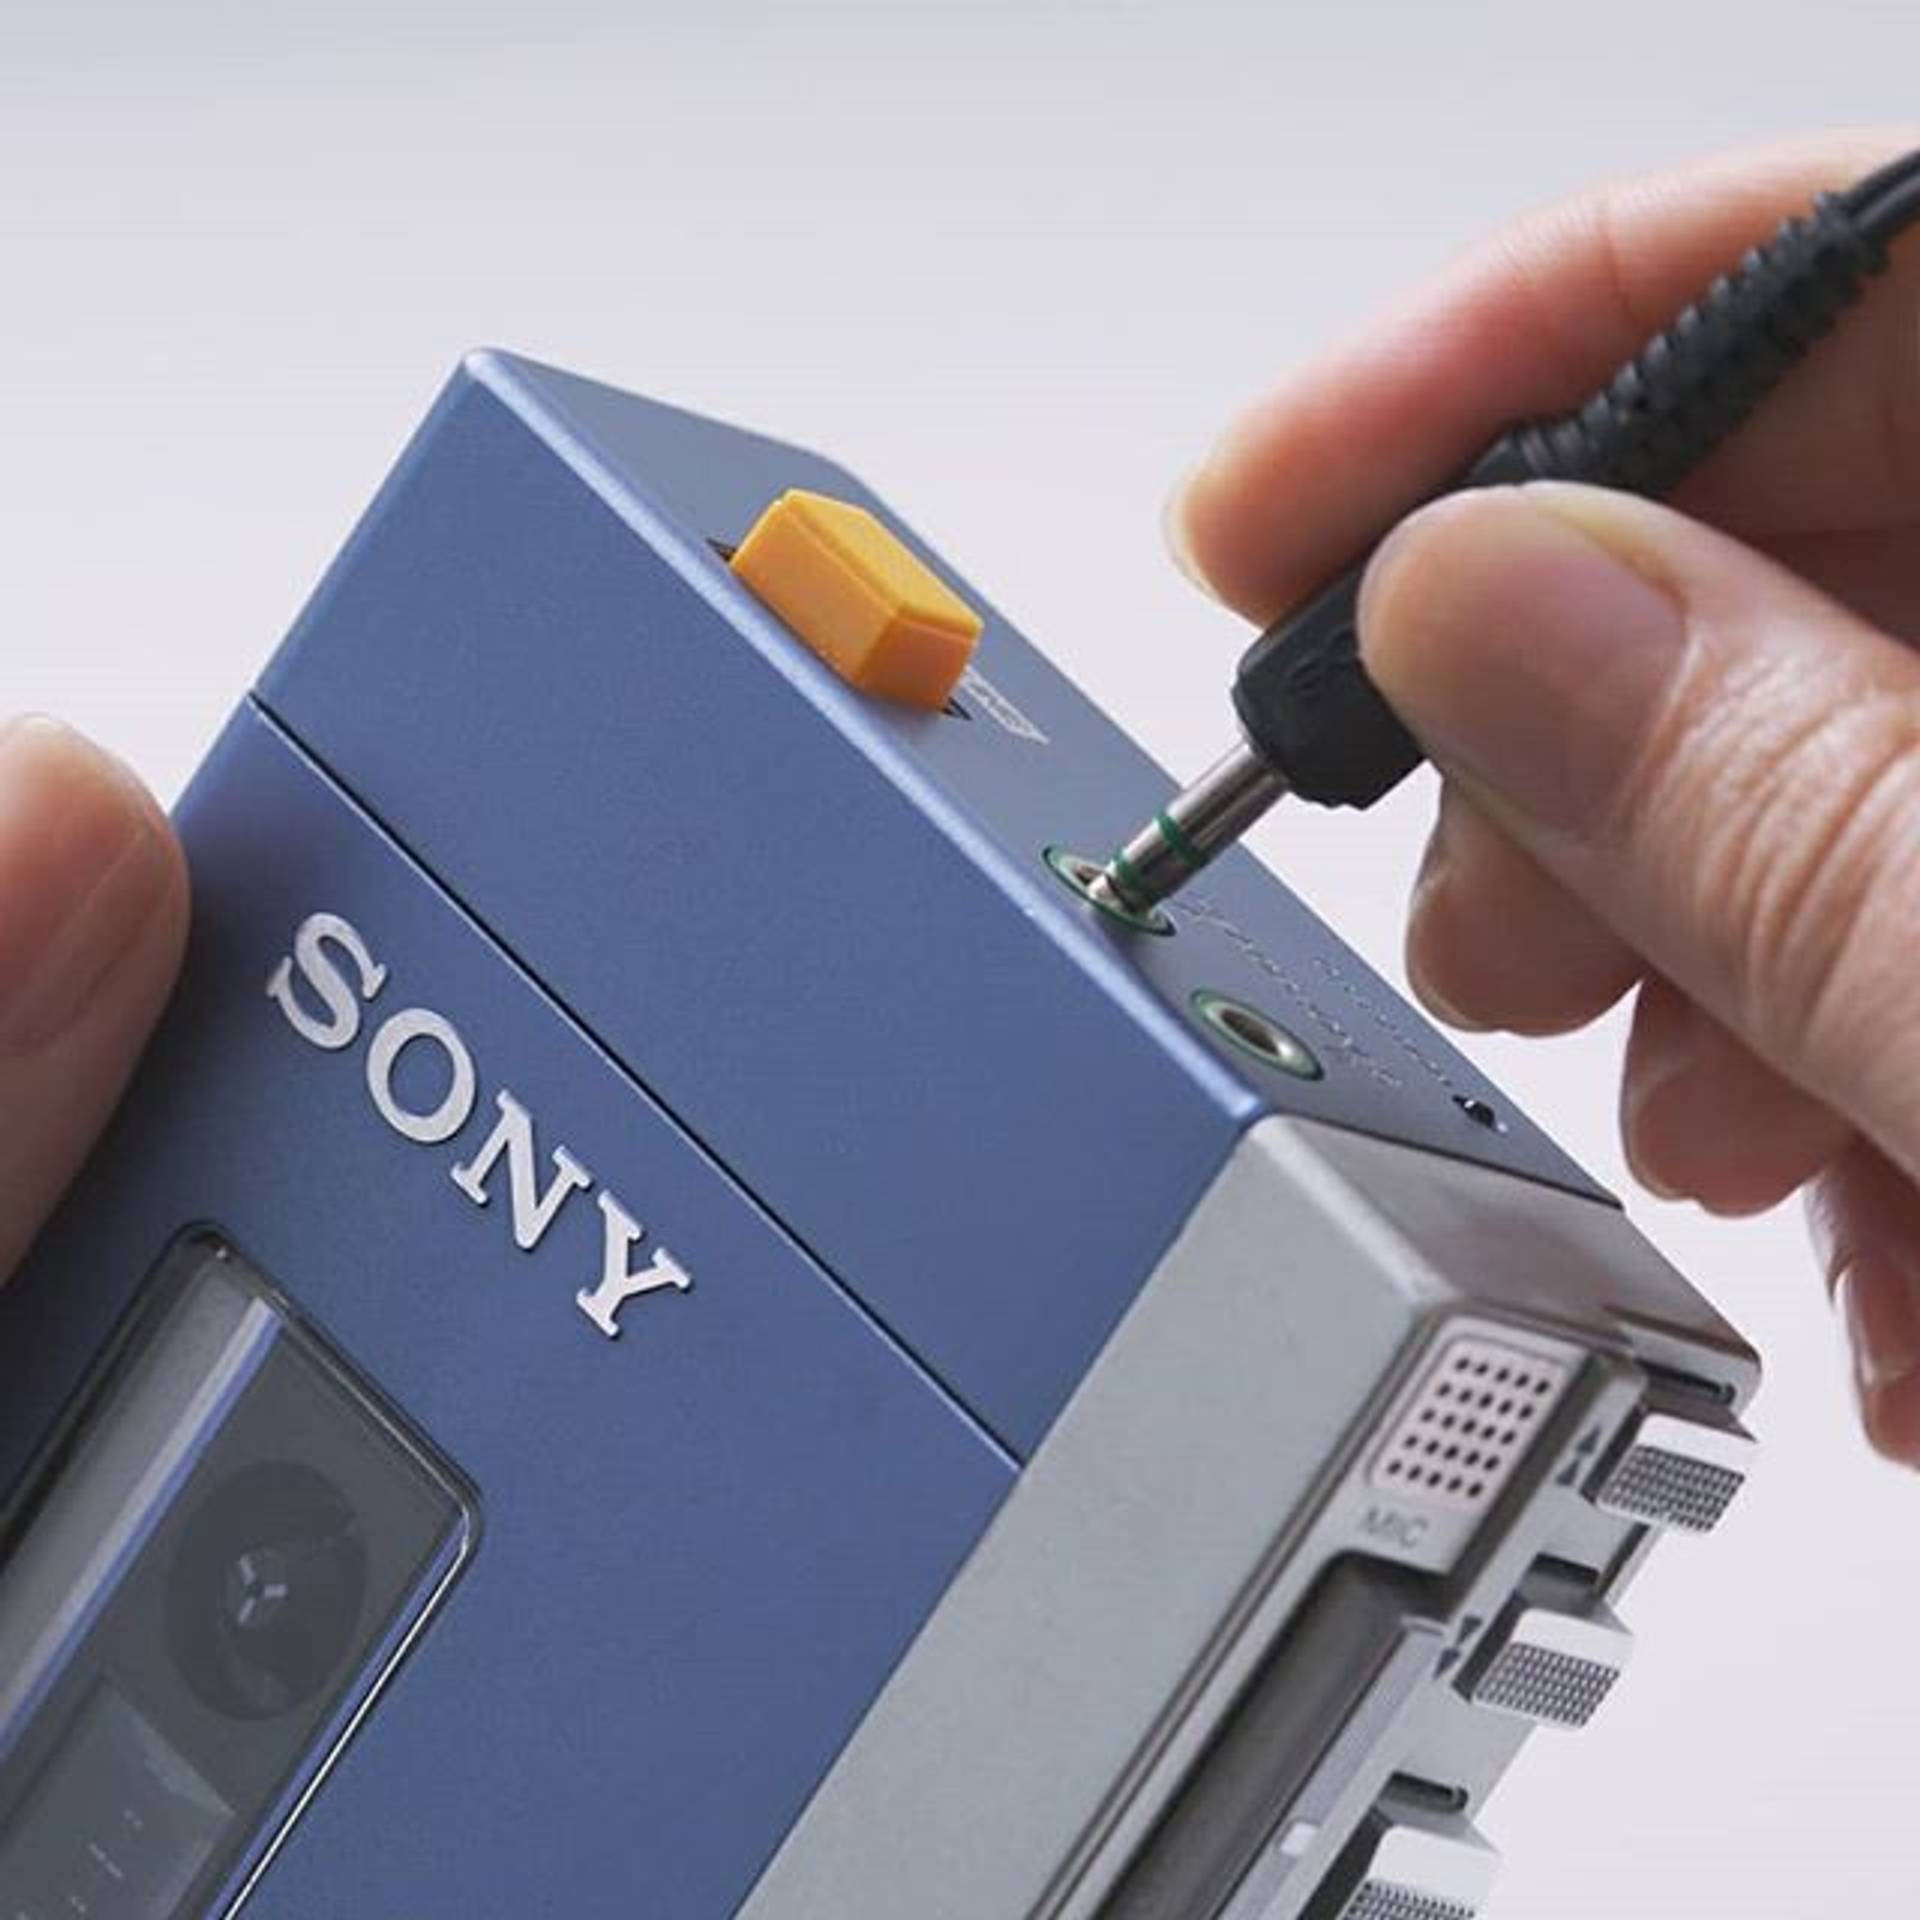 Sony evokes nostalgia with limited edition Walkman